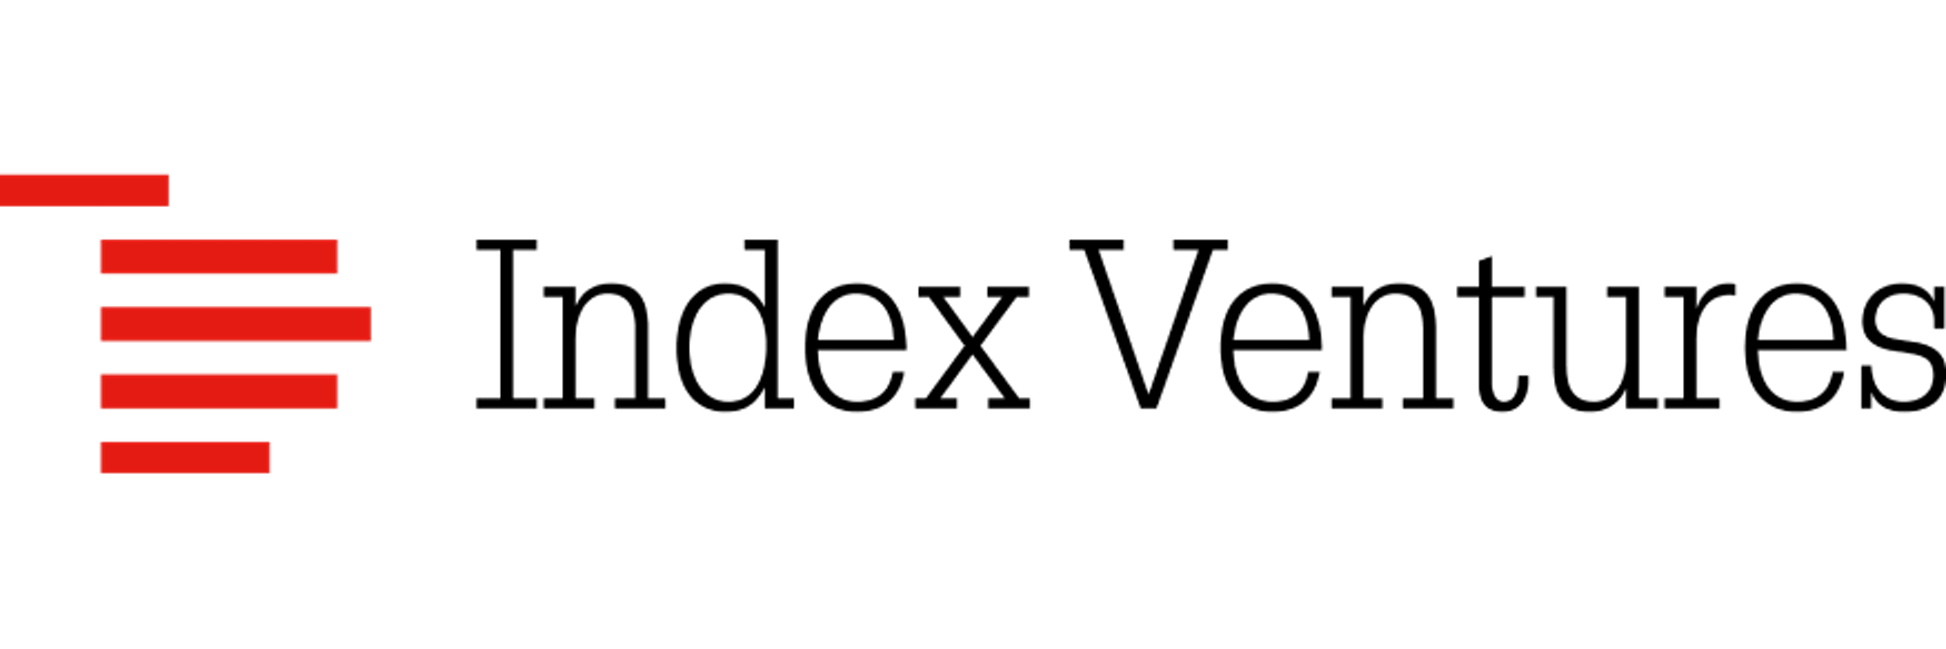 Index ventures logo